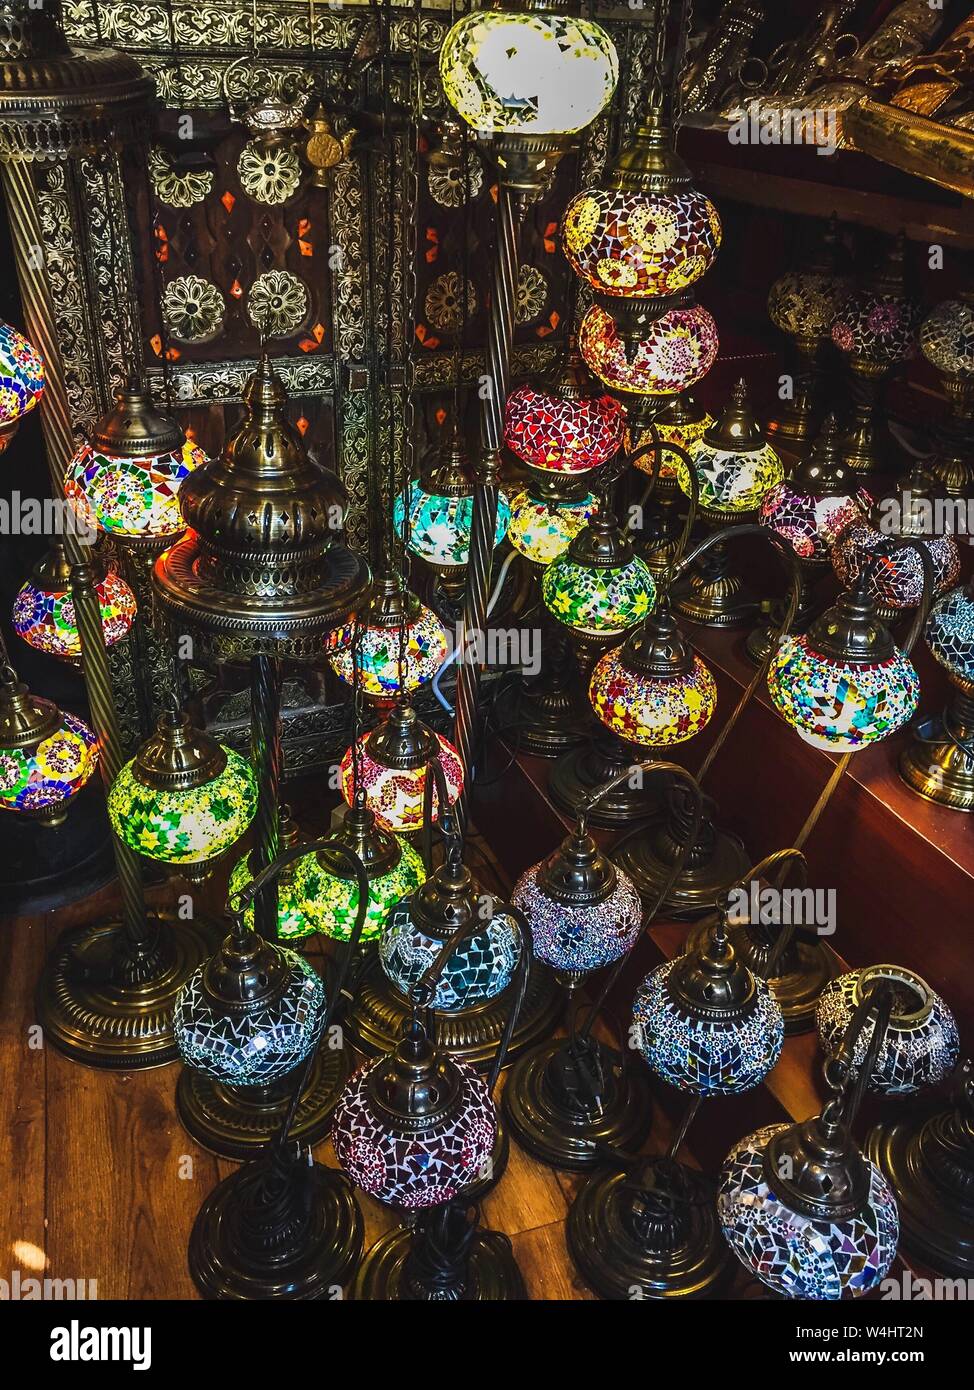 Collection de lanternes en vitrail vendues dans un magasin du marché Souq Waqif, Doha, Qatar, Moyen-Orient. Banque D'Images